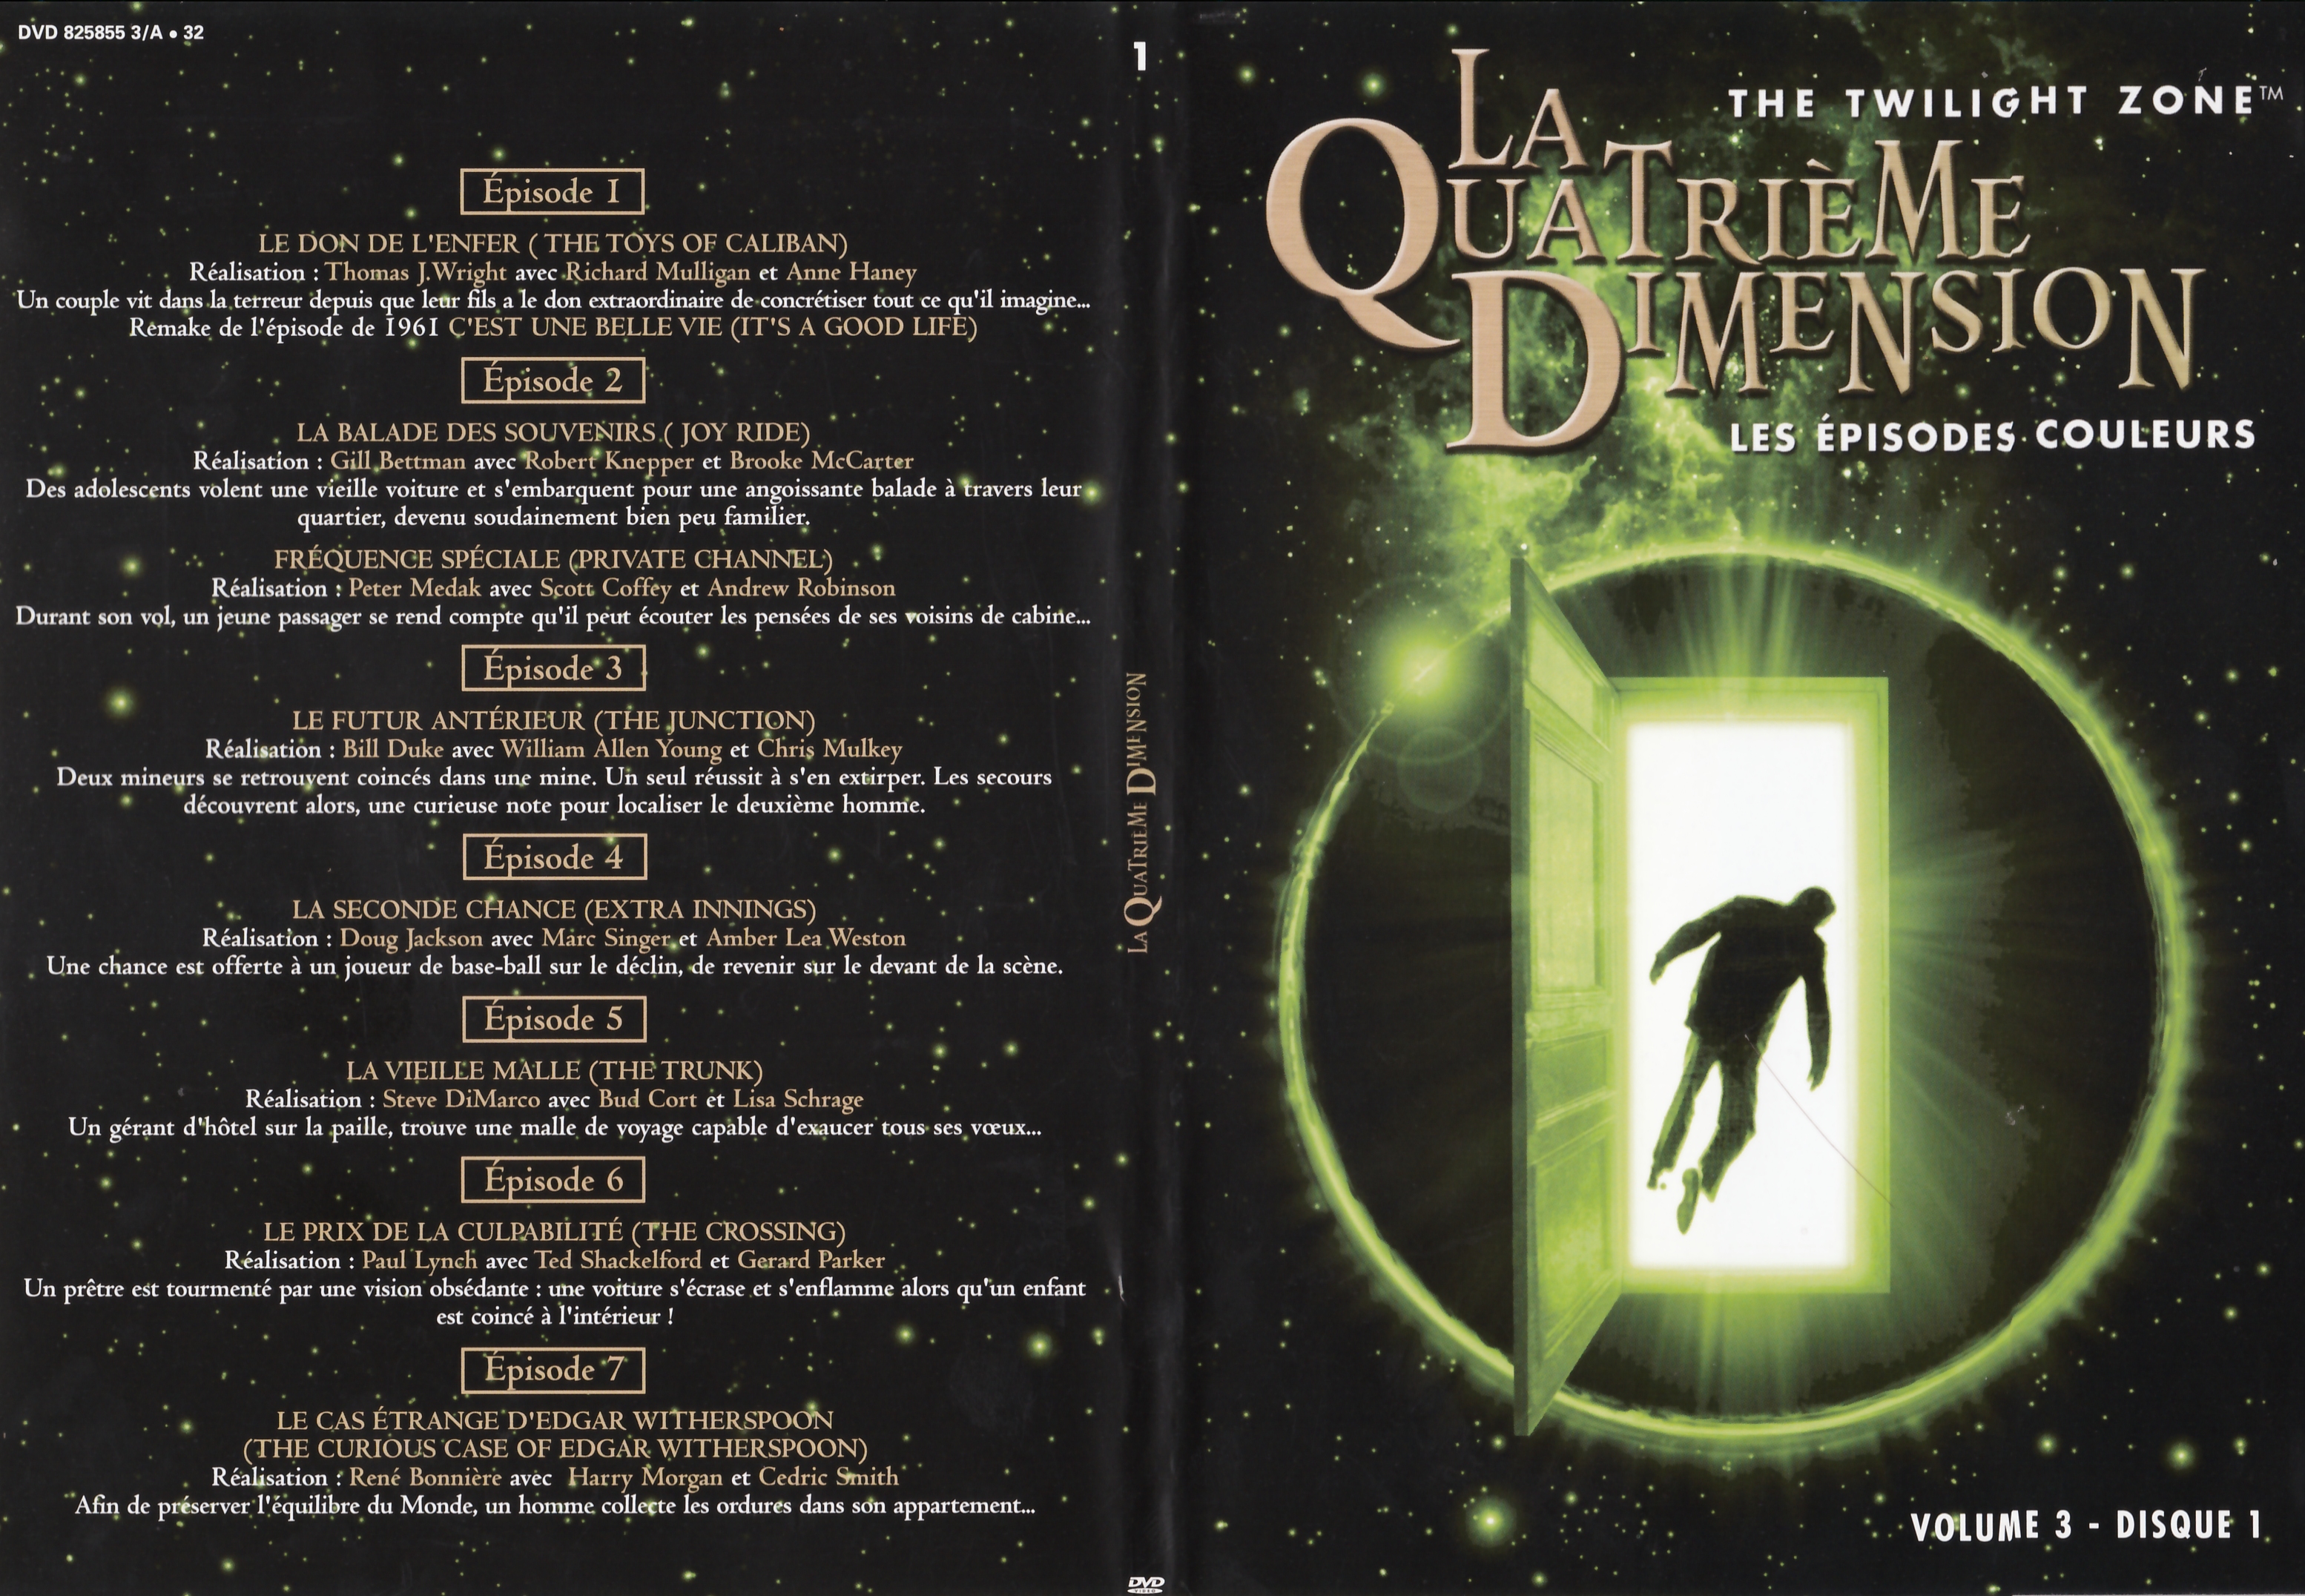 Jaquette DVD La quatrime dimension - Episodes couleurs vol 3 DVD 1